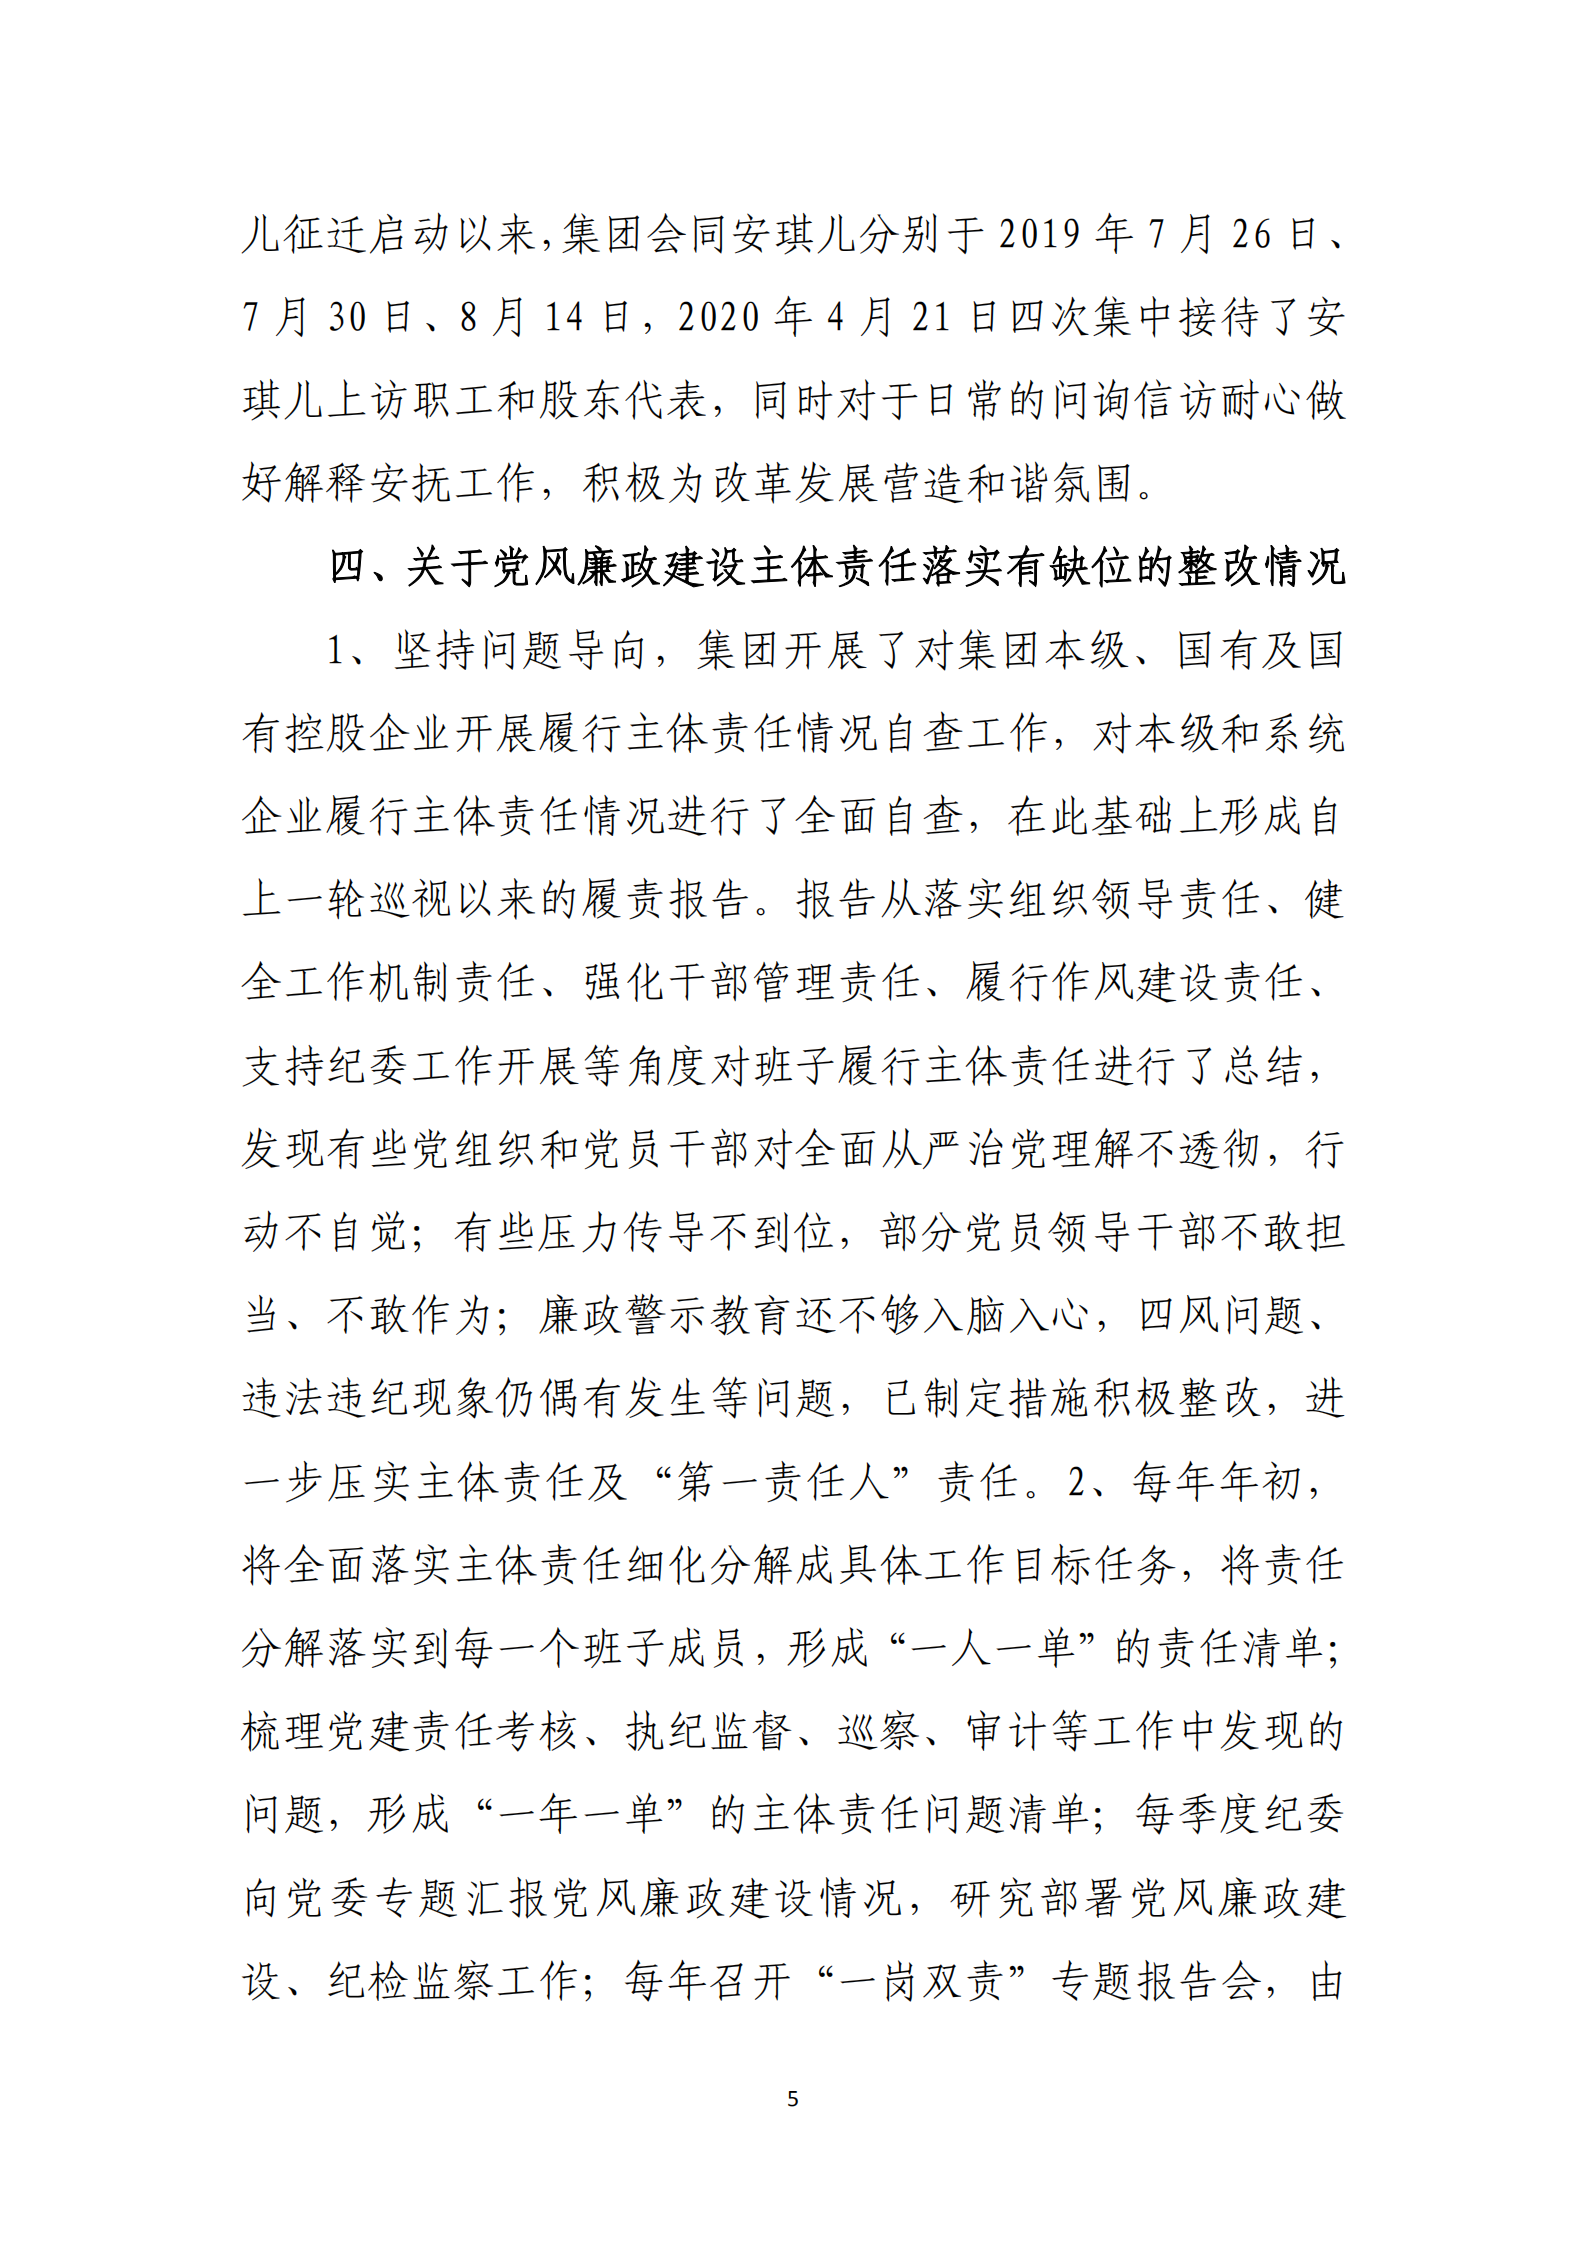 大阳城集团娱乐游戏党委关于巡察整改情况的通报_04.png